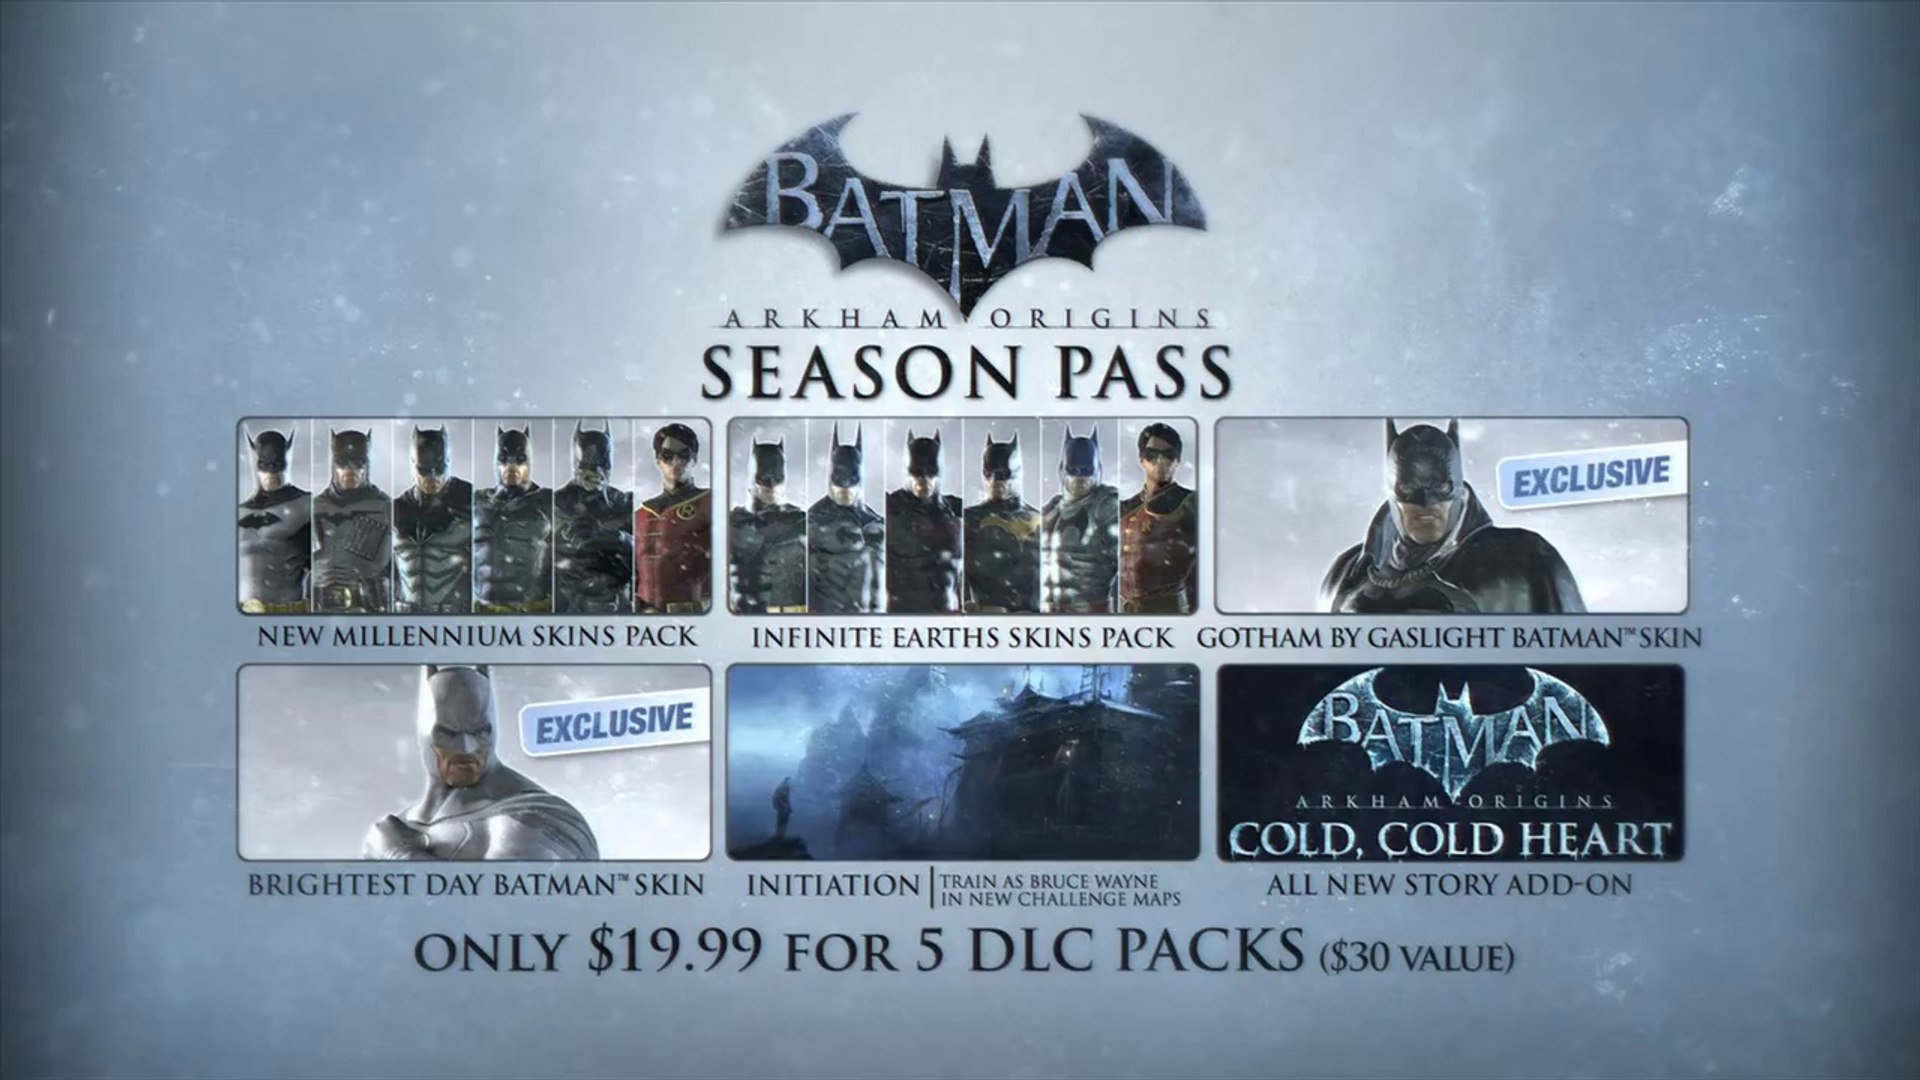 Batman: Arkham Origins - Cold, Cold Heart DLC Launch Trailer 